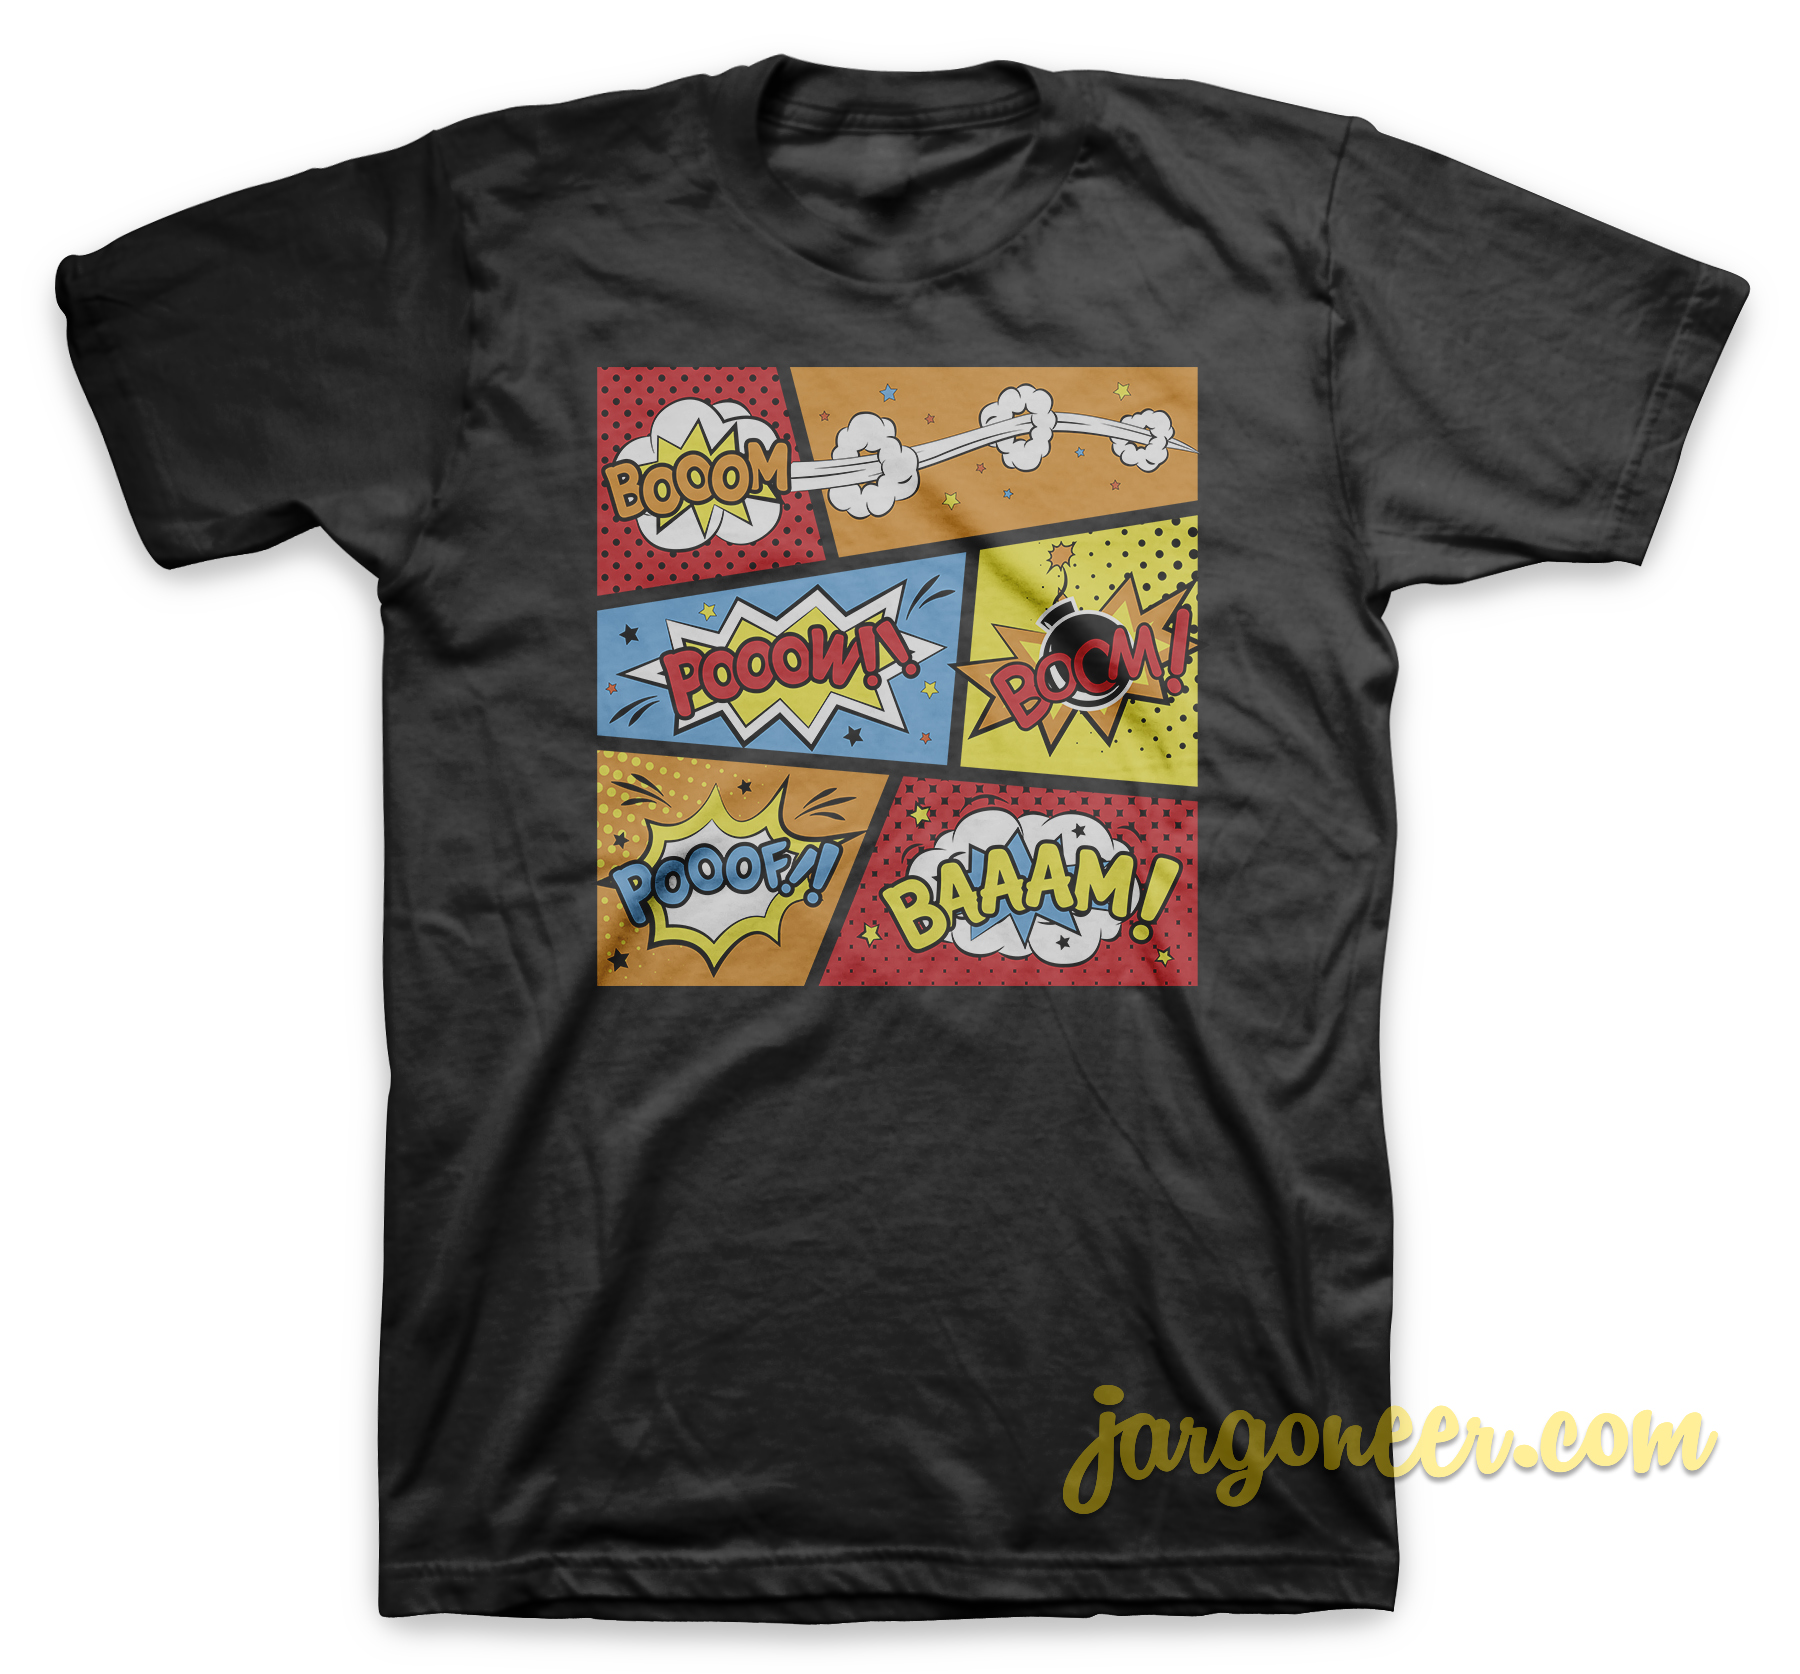 Comic Strips Black T Shirt - Shop Unique Graphic Cool Shirt Designs